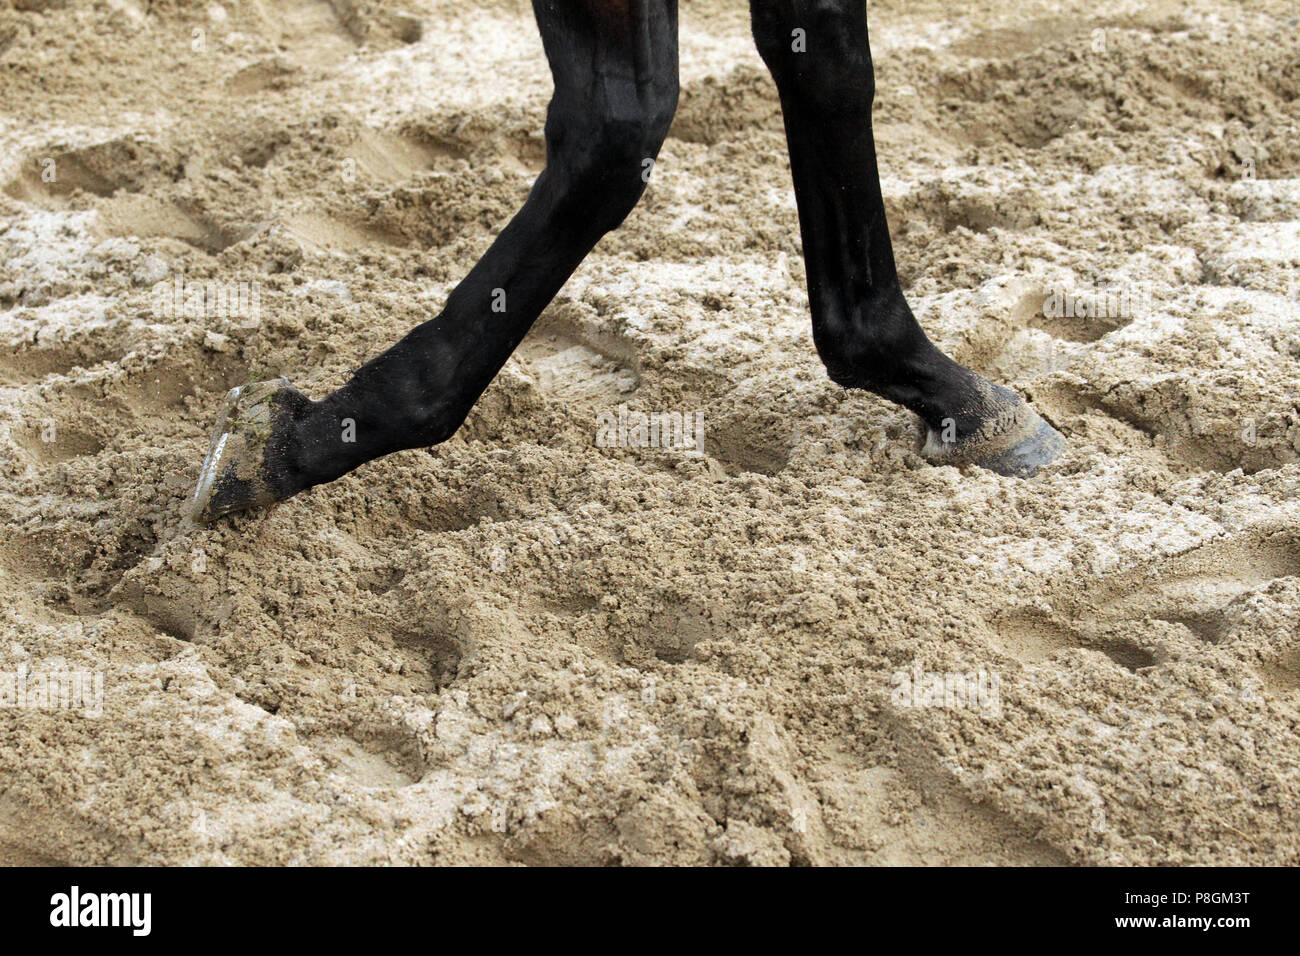 Dresda, a cavallo per le gambe corrono attraverso la sabbia profonda Foto Stock